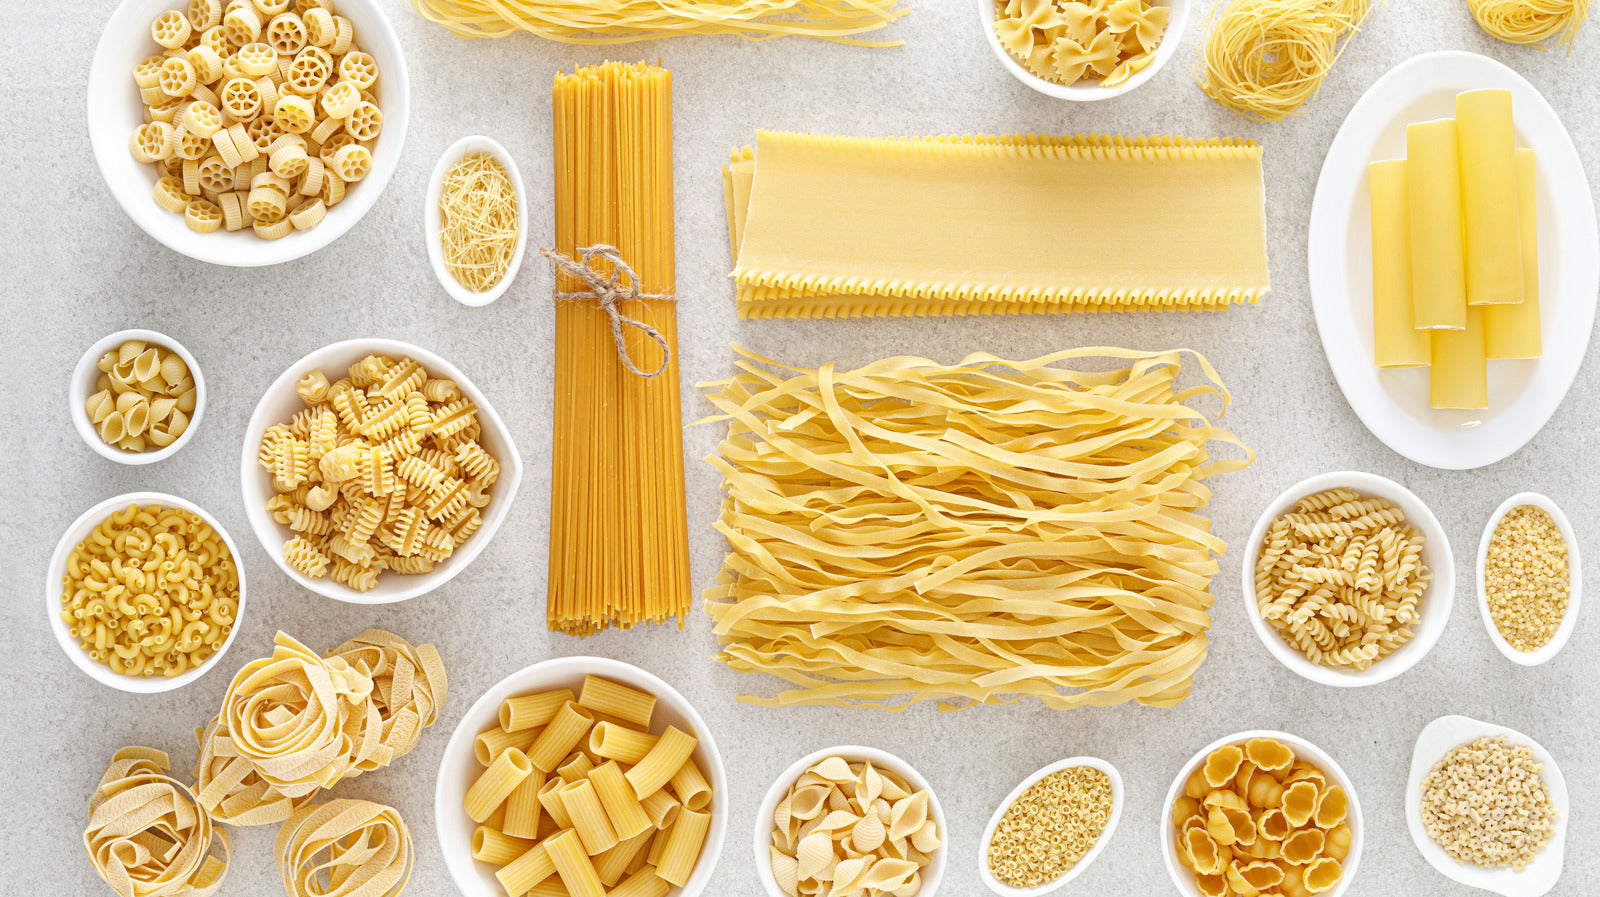 Pasta/Noodles/Rice